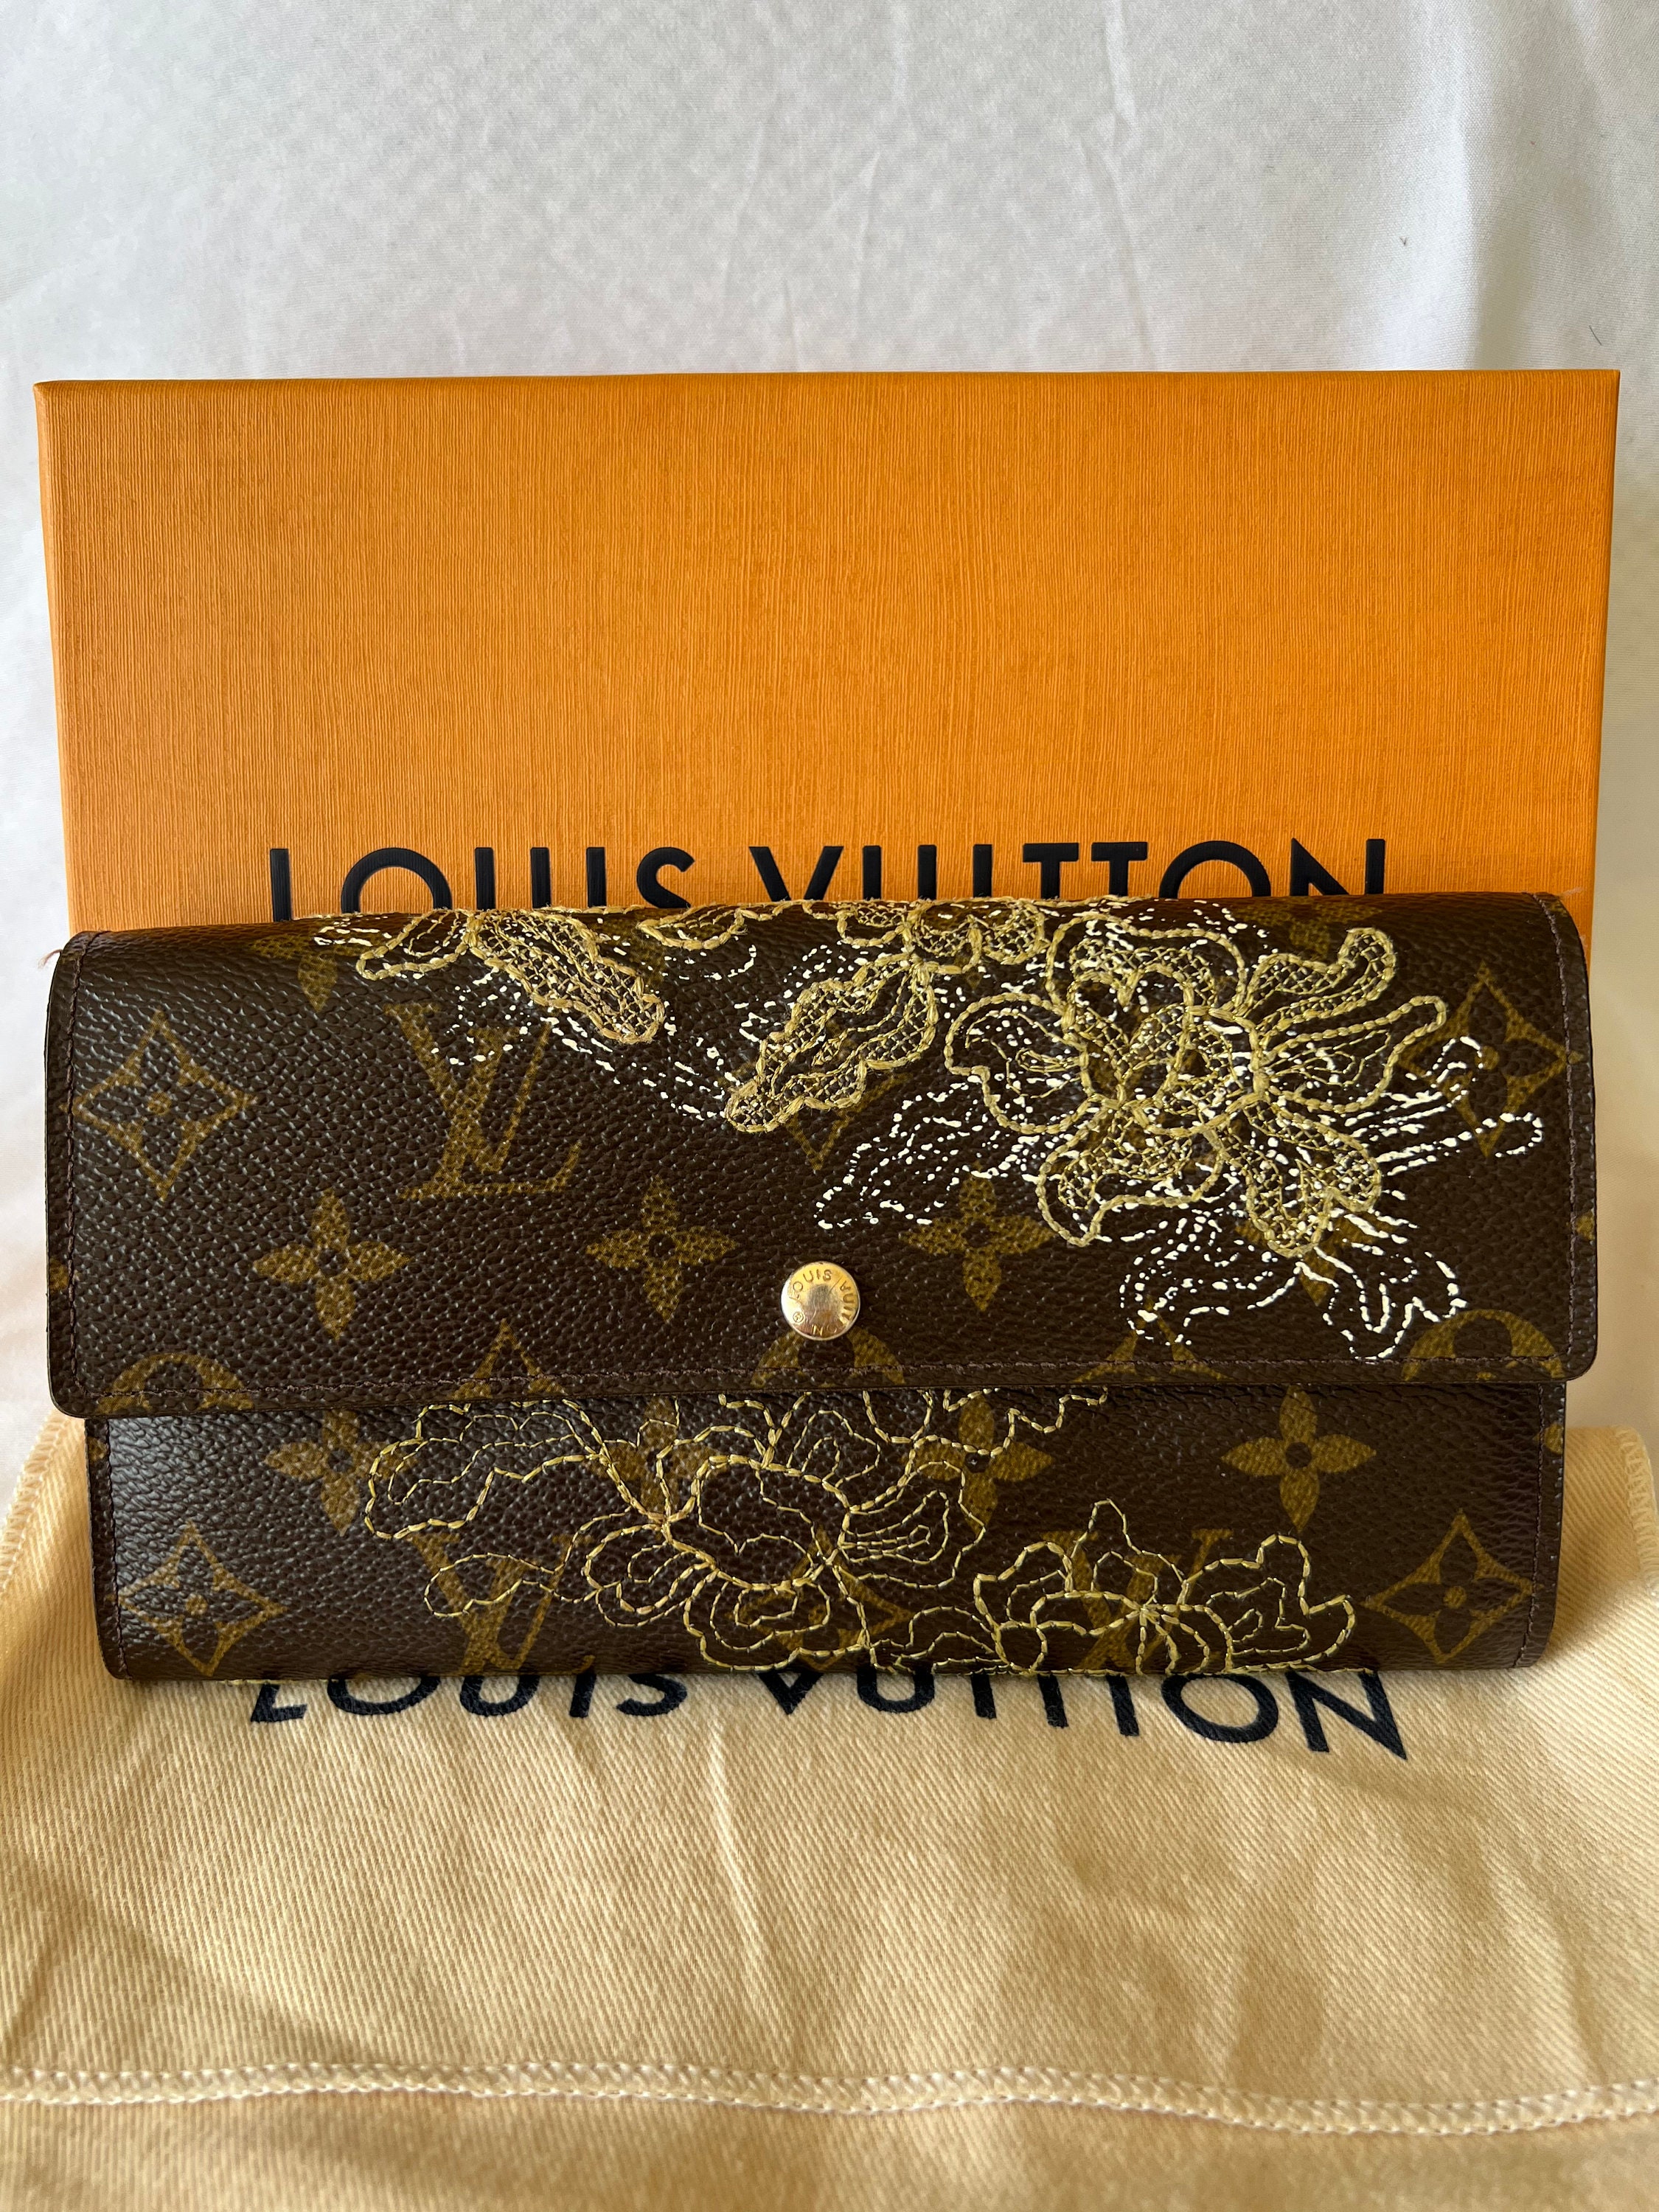 Louis Vuitton Portefeuille Sarah Sarah Wallet